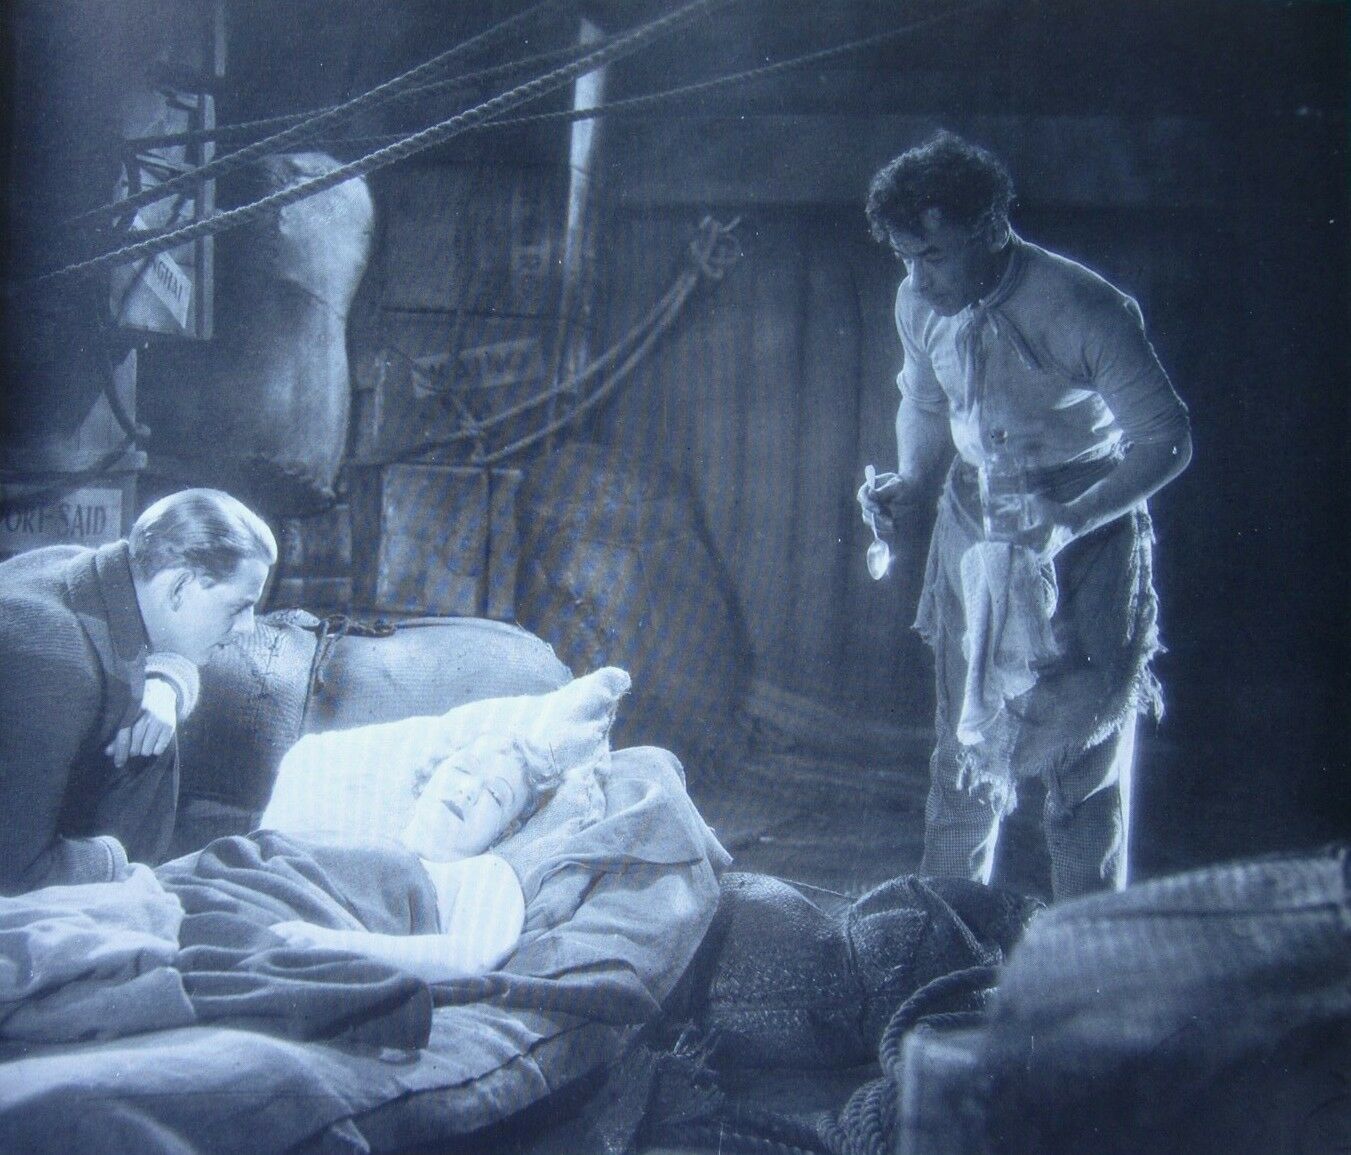 Robin Irvine, Marlene Dietrich and Vladimir Sokoloff in The Ship of Lost Men aka Das Schiff der verlorenen Menschen (1929)